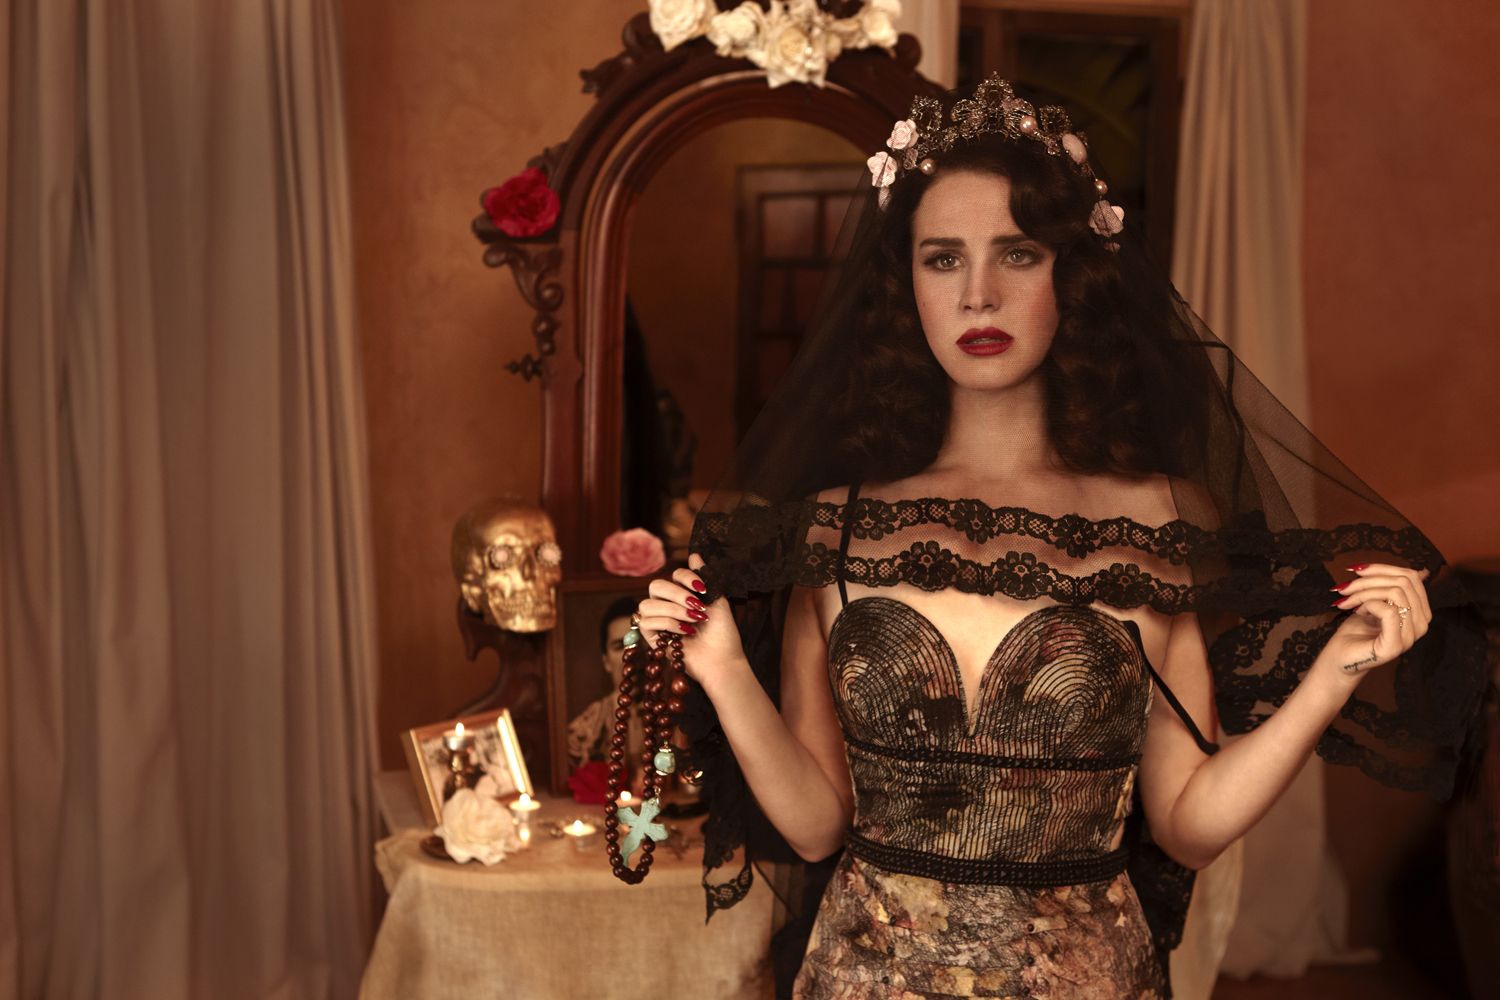 A woman in fancy dress standing by mirror - Lana Del Rey